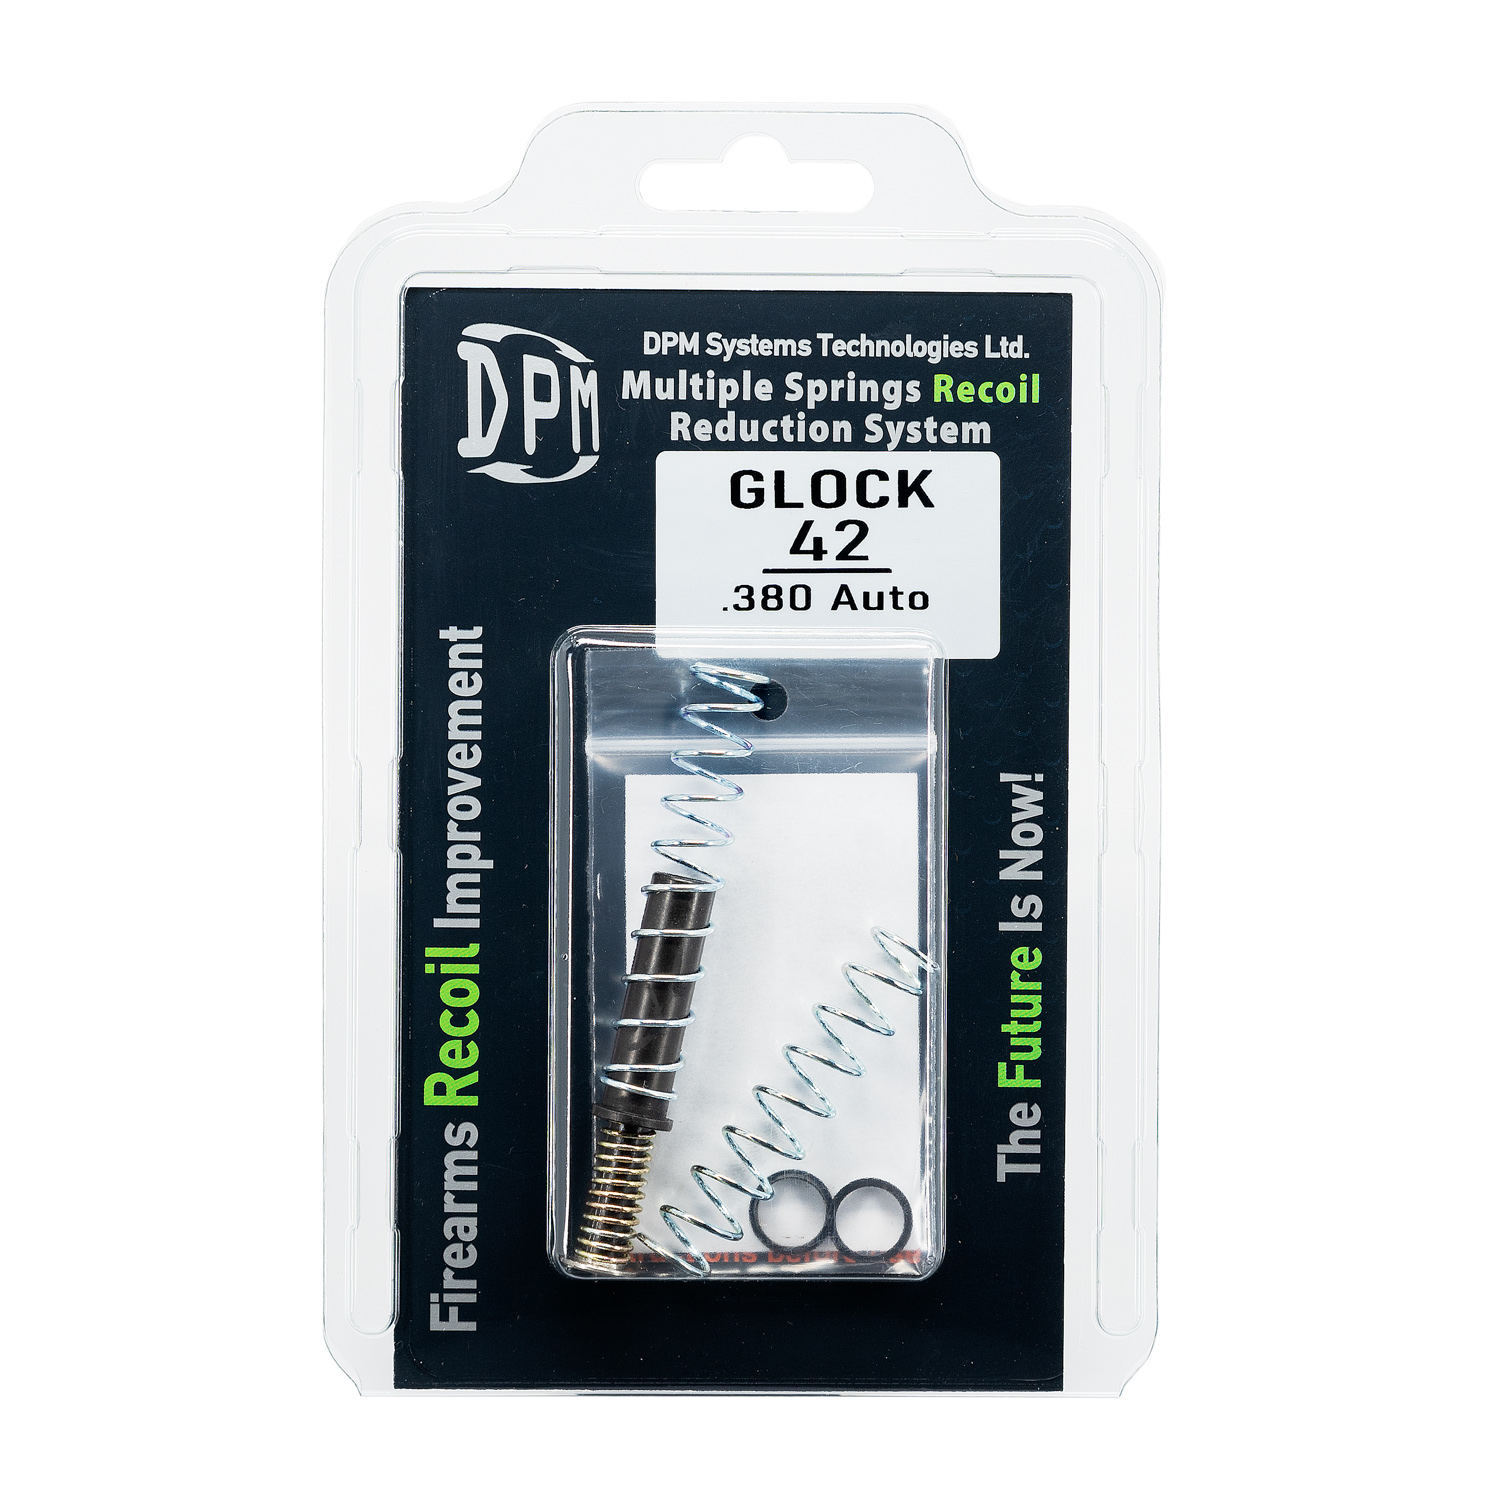 DPM MRS för Glock 42 - ny version aresmaxima.com